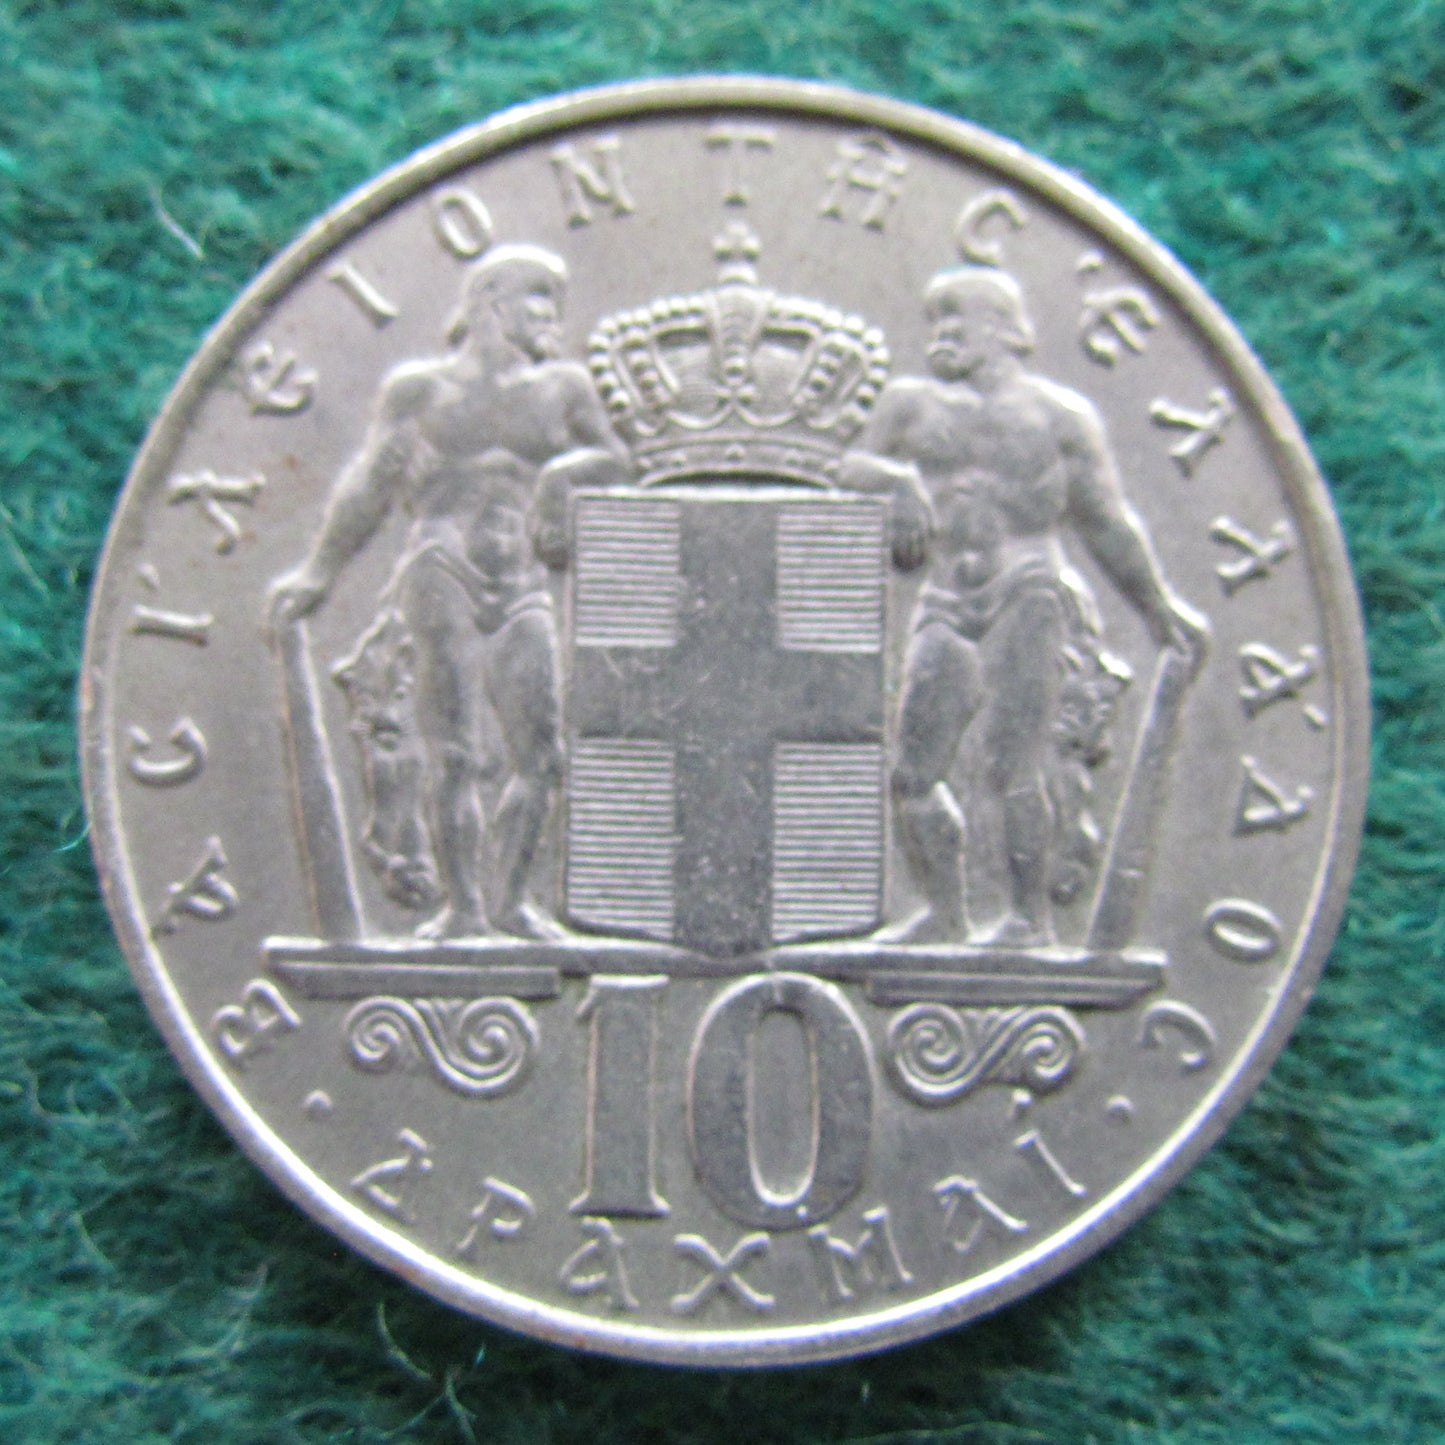 Greek 1968 10 Drachma Coin - Circulated